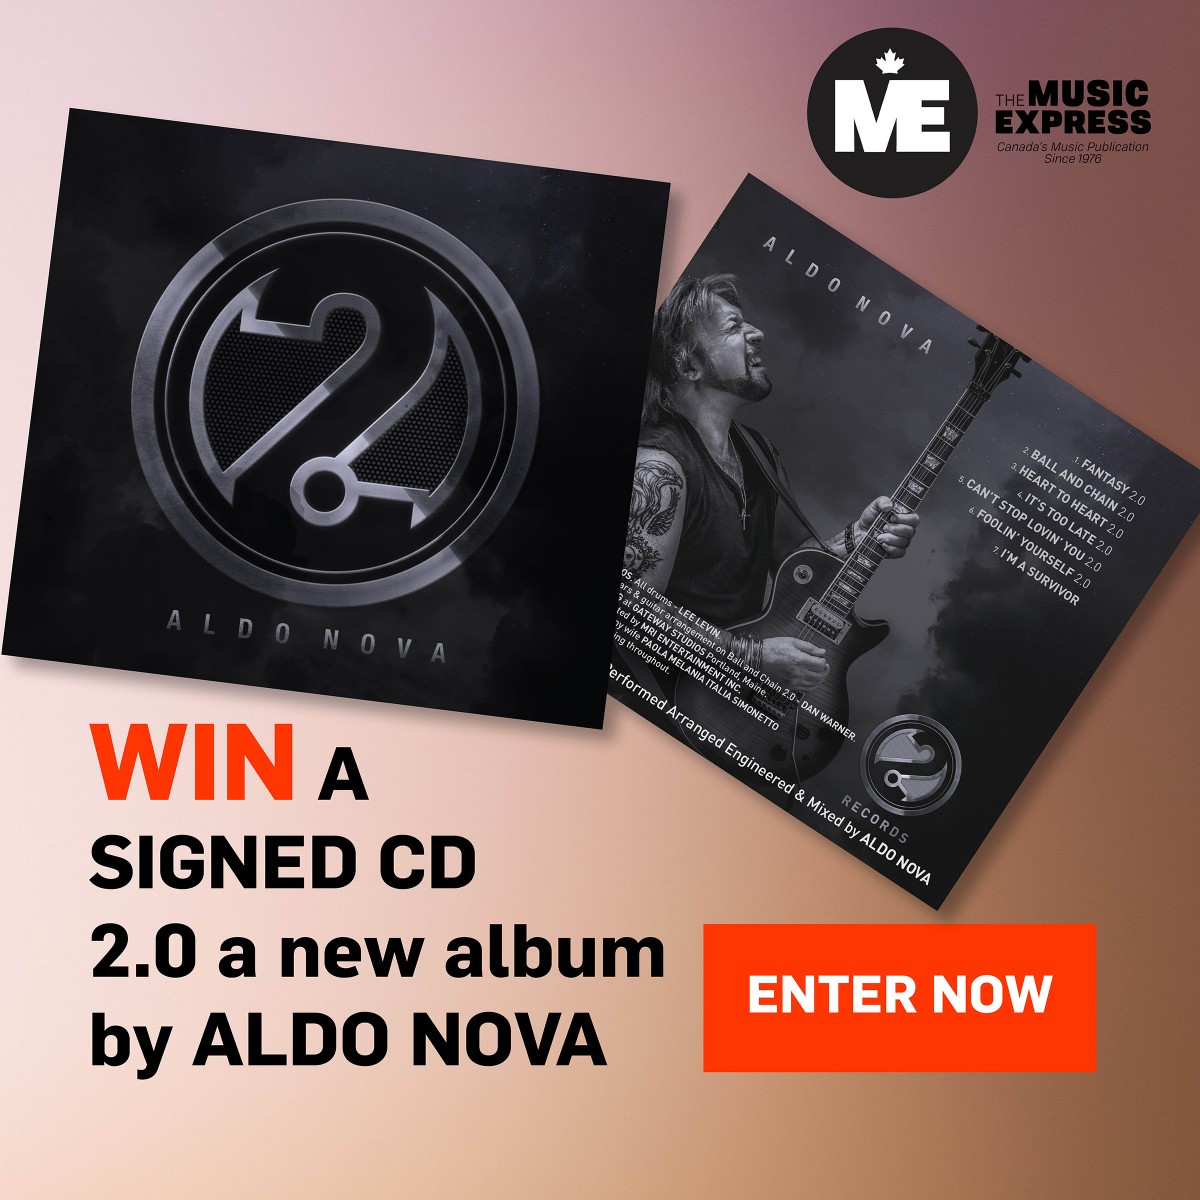 Enter to Win a Signed CD – New Album 2.0 by Aldo Nova